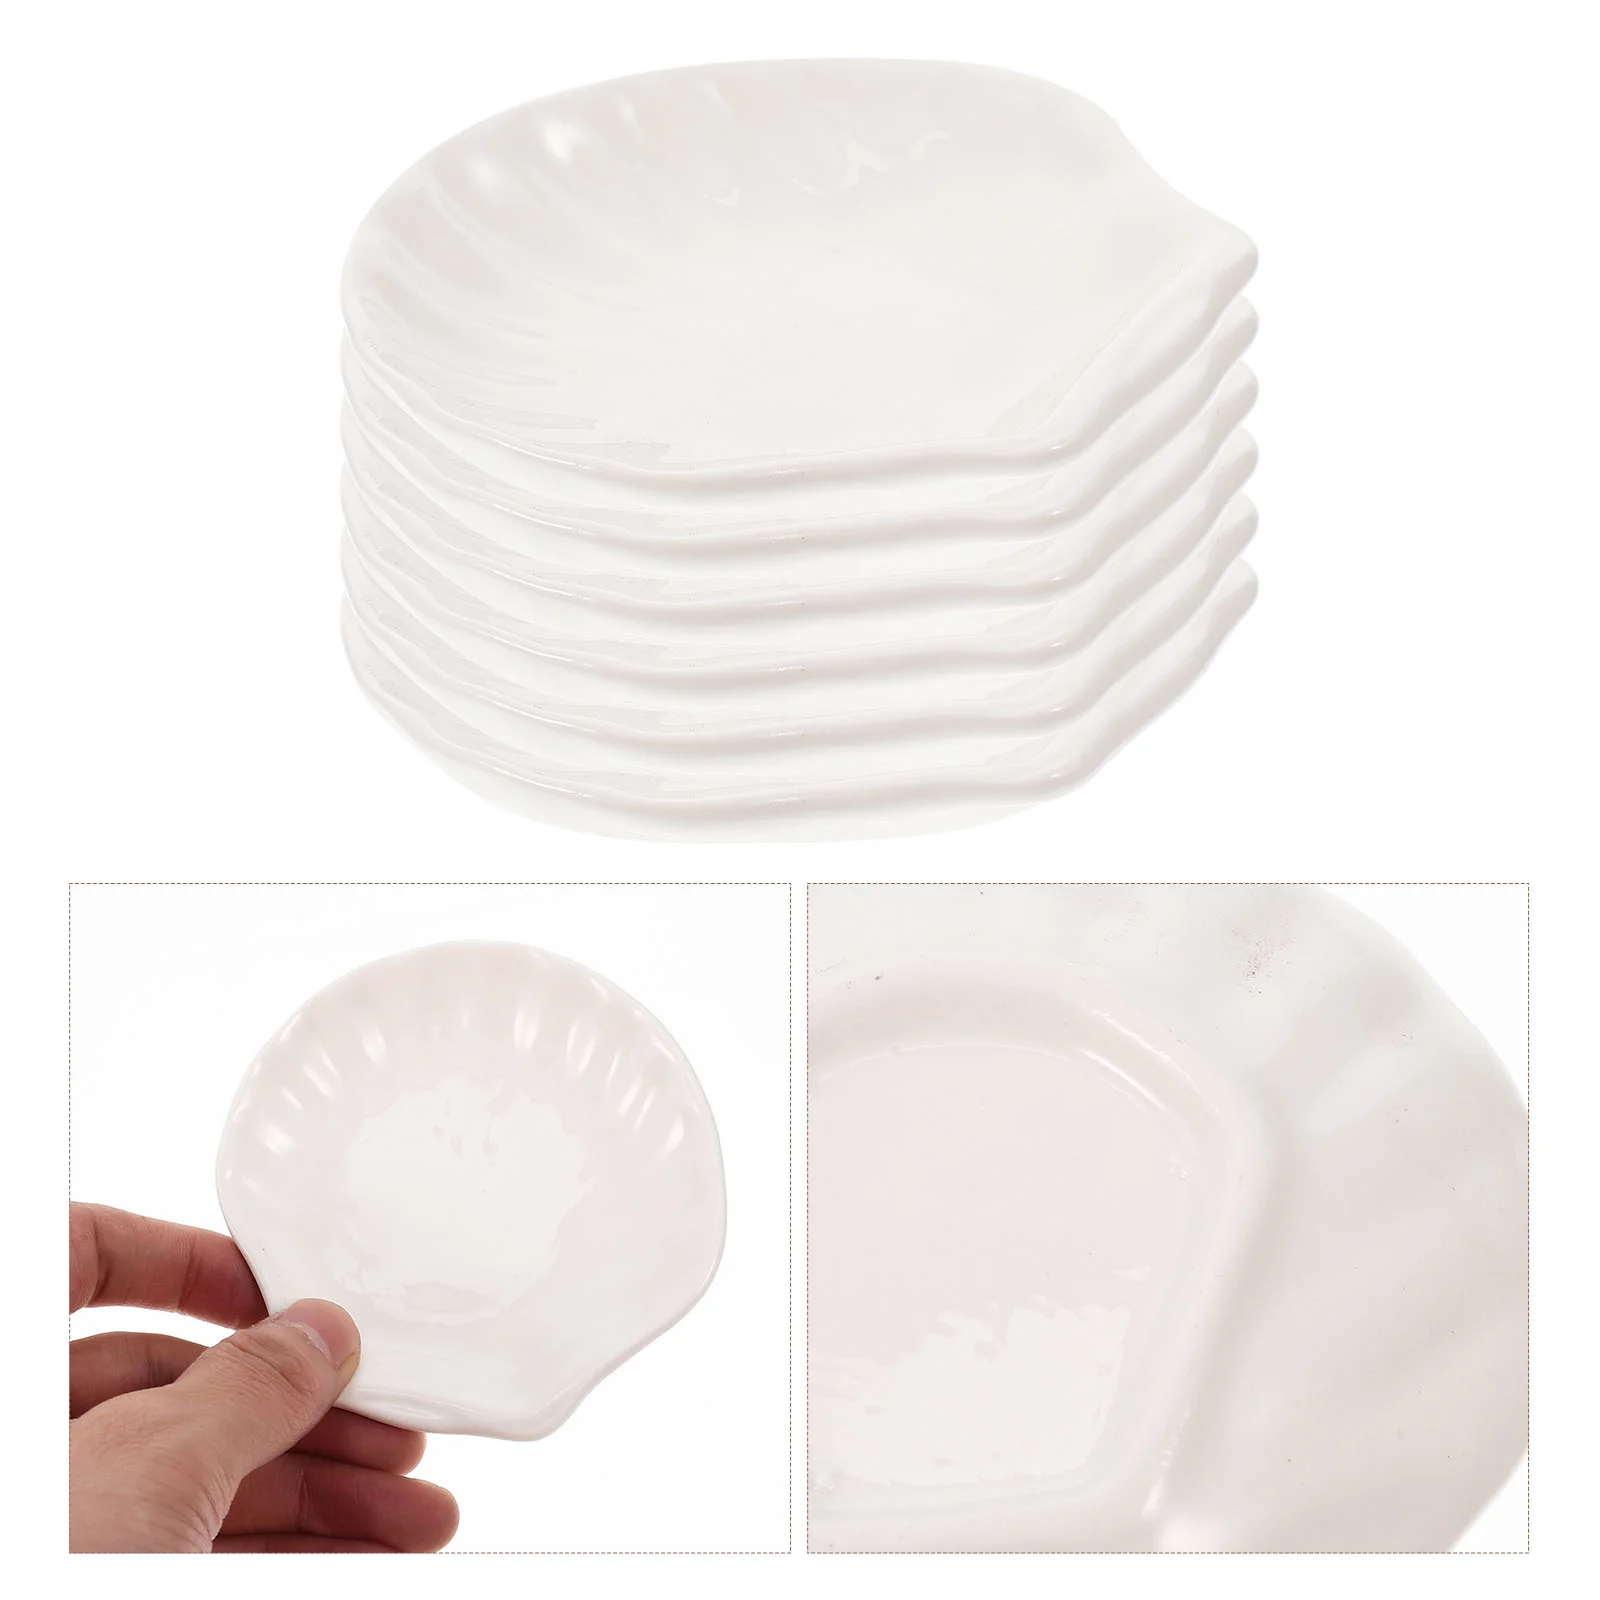 

6pcs Porcelain Serving Platter Bowls Dessert Plates Shall Ceramic Salad Bowls for Rice- Cereal Soup Bowls for Home Restaurant